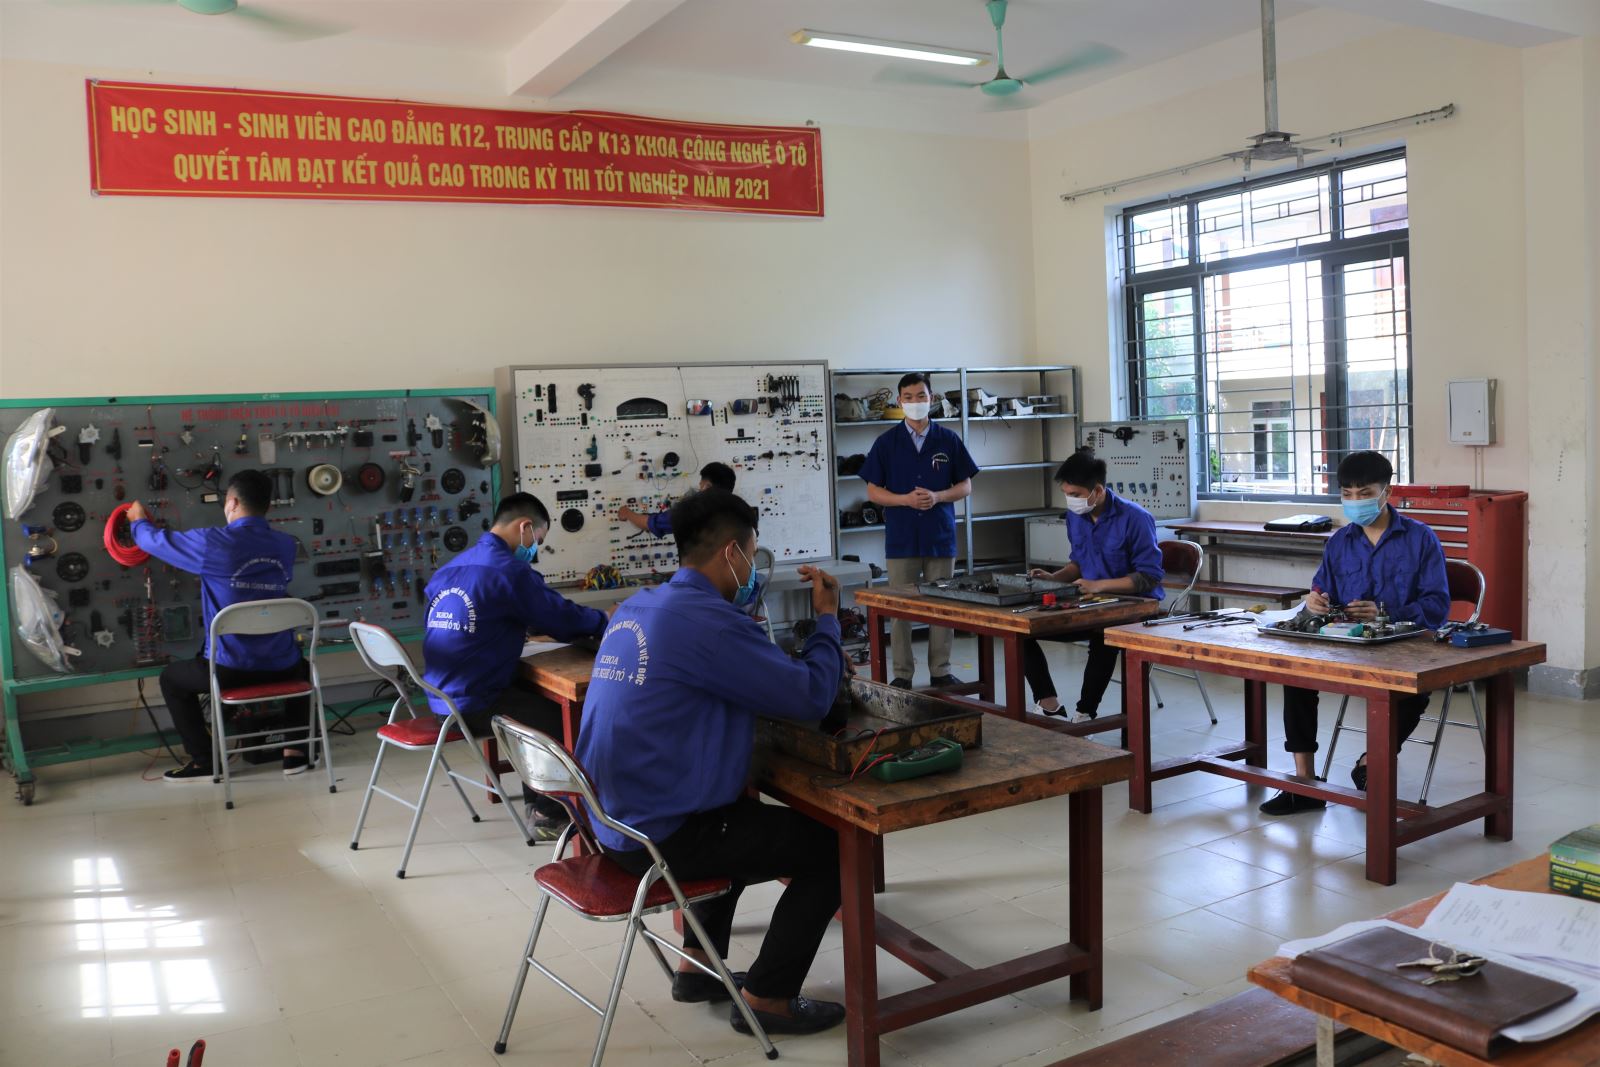 Trường Cao đẳng Việt – Đức Nghệ An tổ chức Kỳ thi tốt nghiệp đợt 1 cho sinh viên Cao đẳng Khóa 12 và học sinh Trung cấp Khóa 13